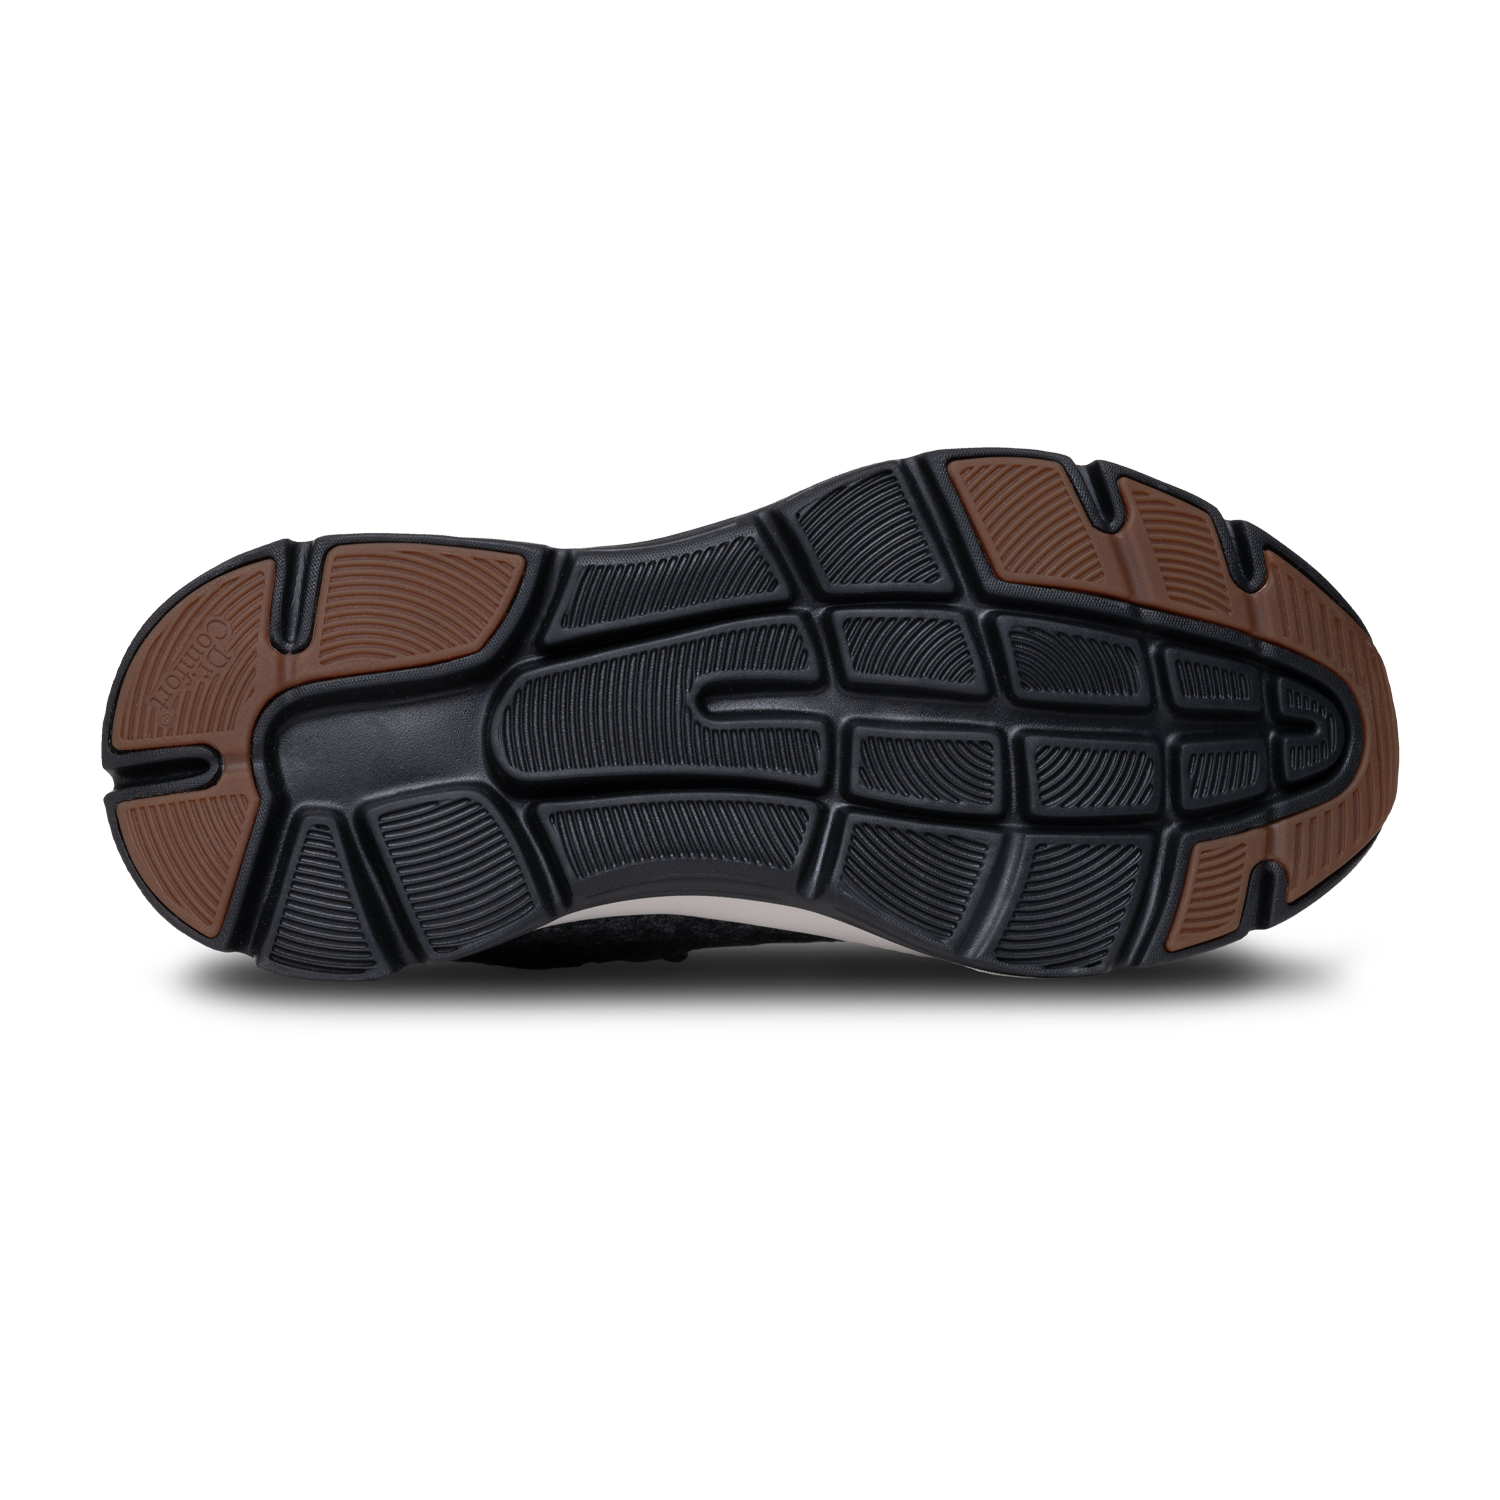 Zusatzbild DR. COMFORT® Dawn grau, unten, Orthopädische Schuhe, Bequemer, atmungsaktiver und wasserabweisender Schuh mit Merinowolle.